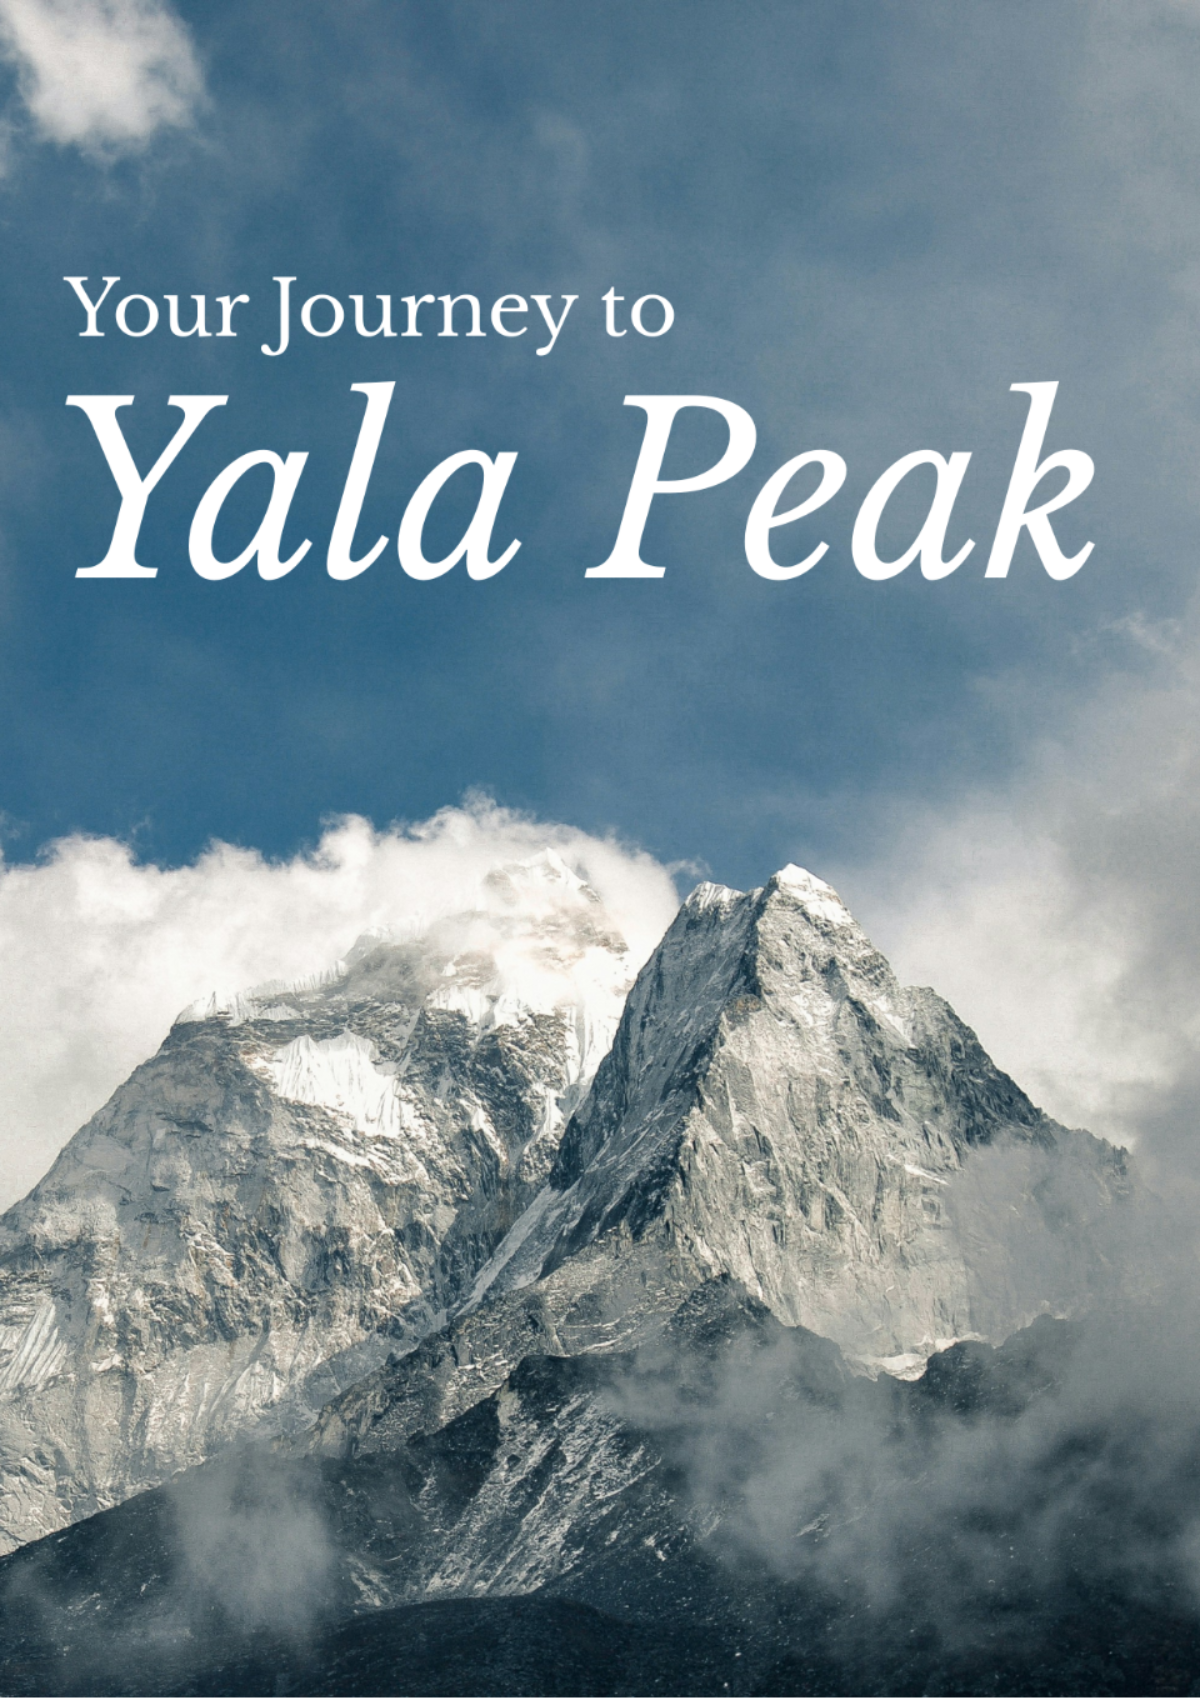 Free Yala Peak Itinerary Template